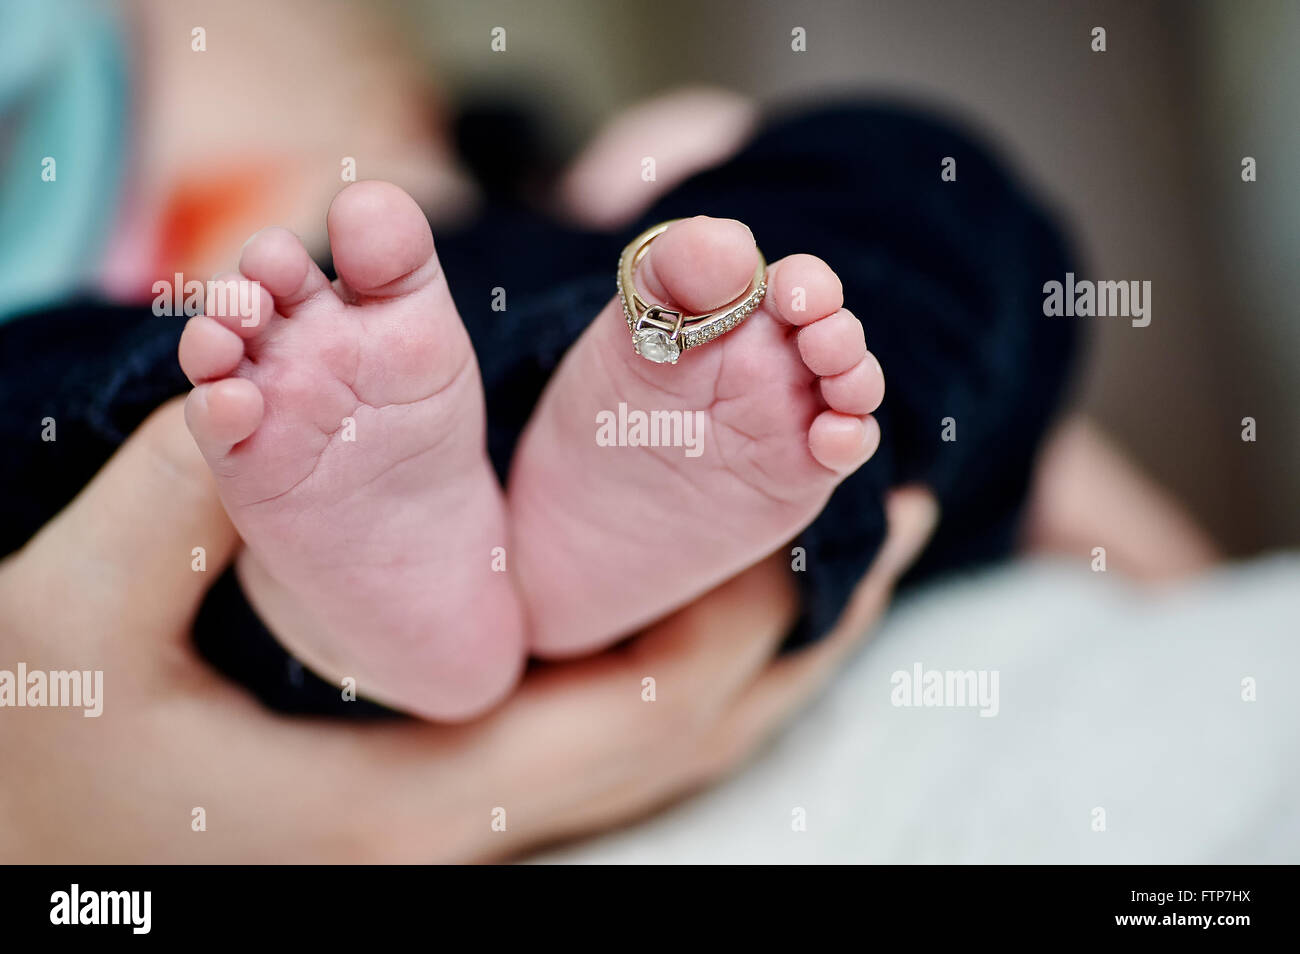 Del neonato in piedi la madre mano con gli anelli di nozze sul dito Foto Stock